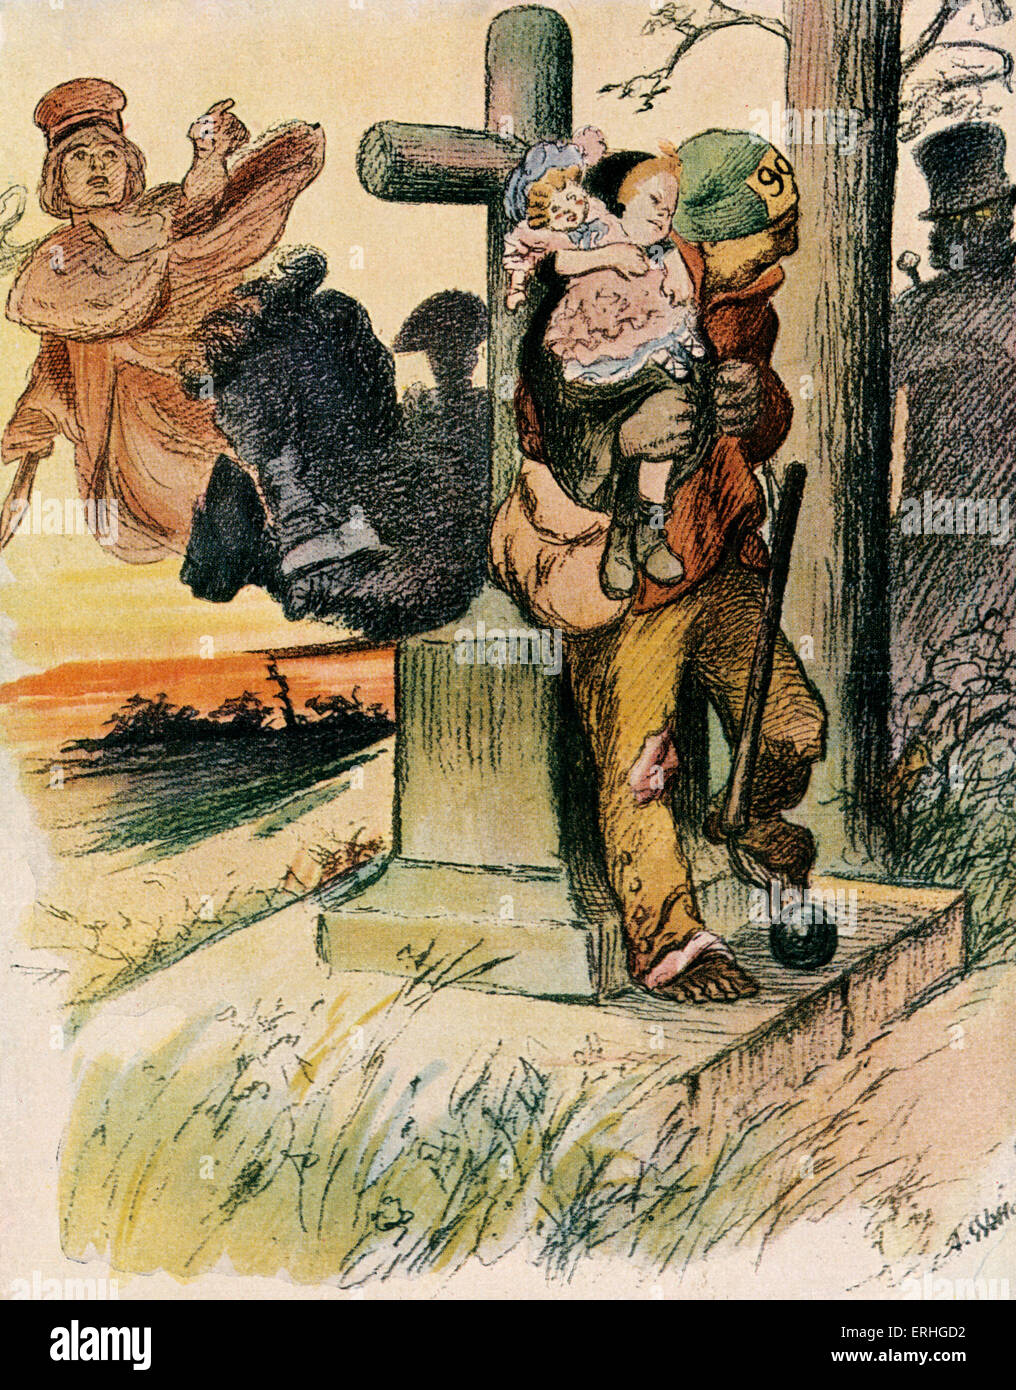 Les Misérables de Victor Hugo, illustration de Jean Valjean Cosette tenant  dans ses bras. Auteur et poète français 26 février 1802 - 22 mai 1885 Photo  Stock - Alamy